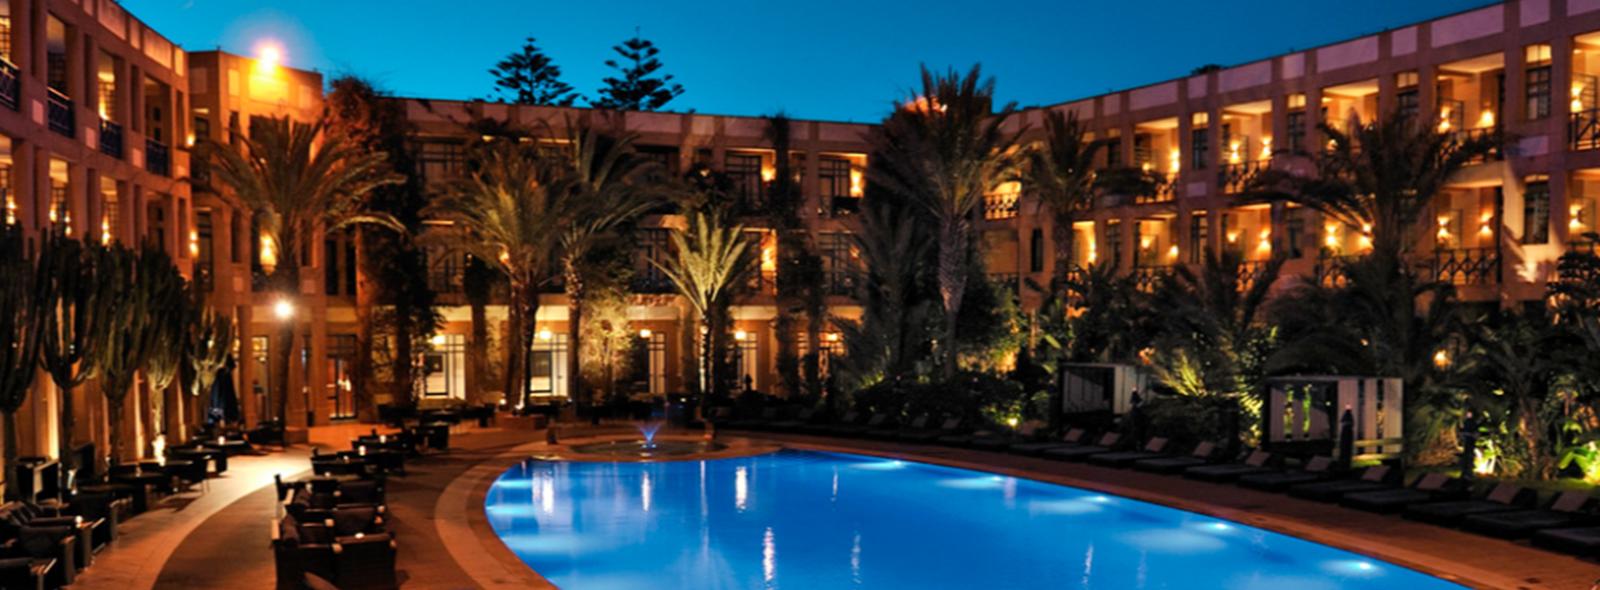 Piscine extérieur vue de nuit à l'hôtel de MGallery à Essaouira au Maroc